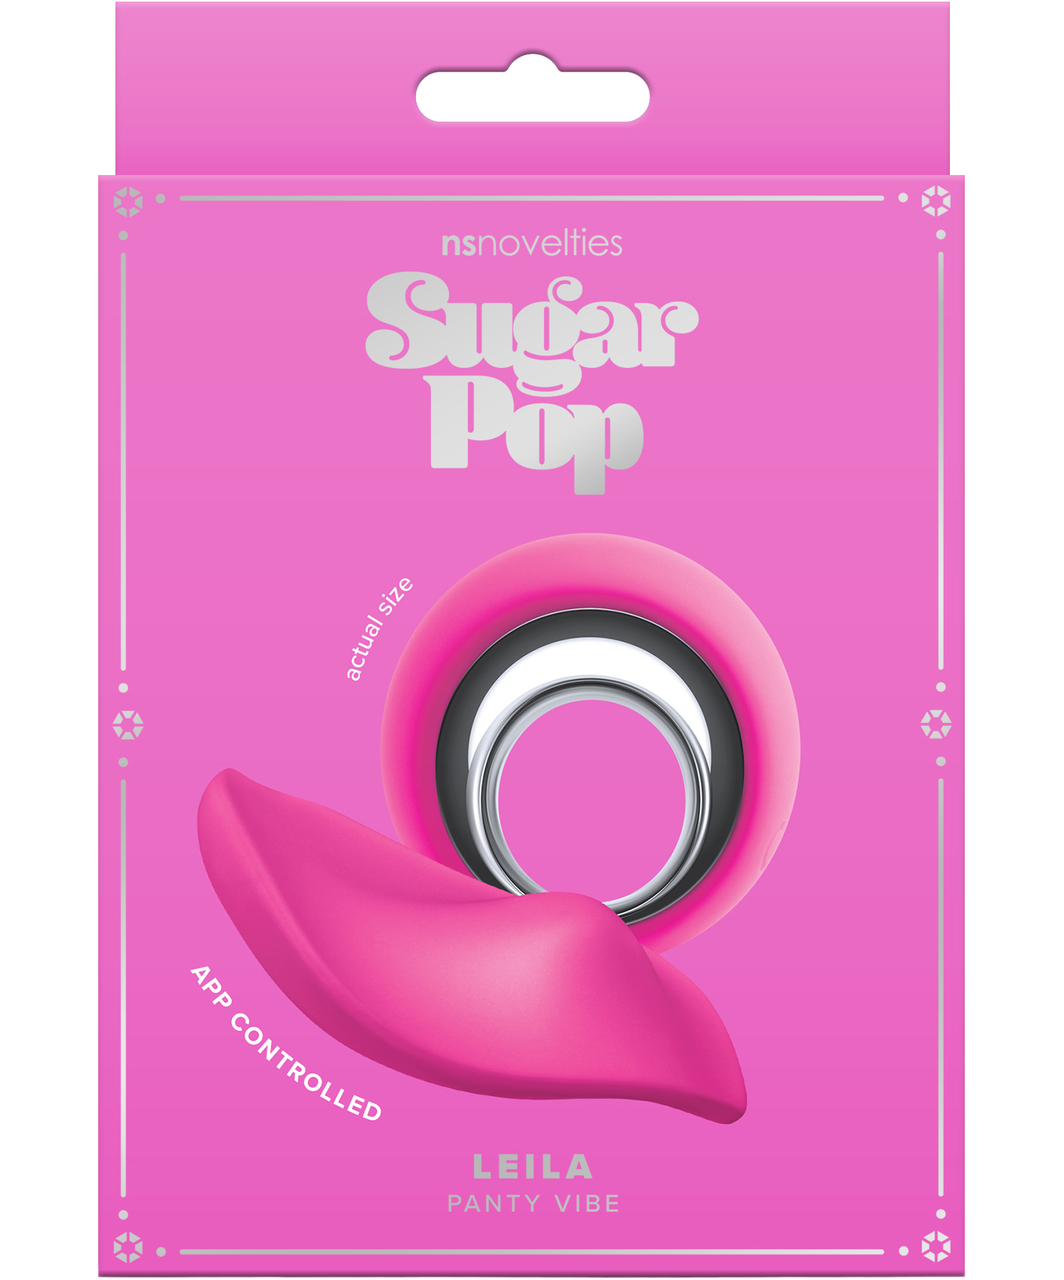 Sugar Pop Leila Remote & App Control Panty Vibe